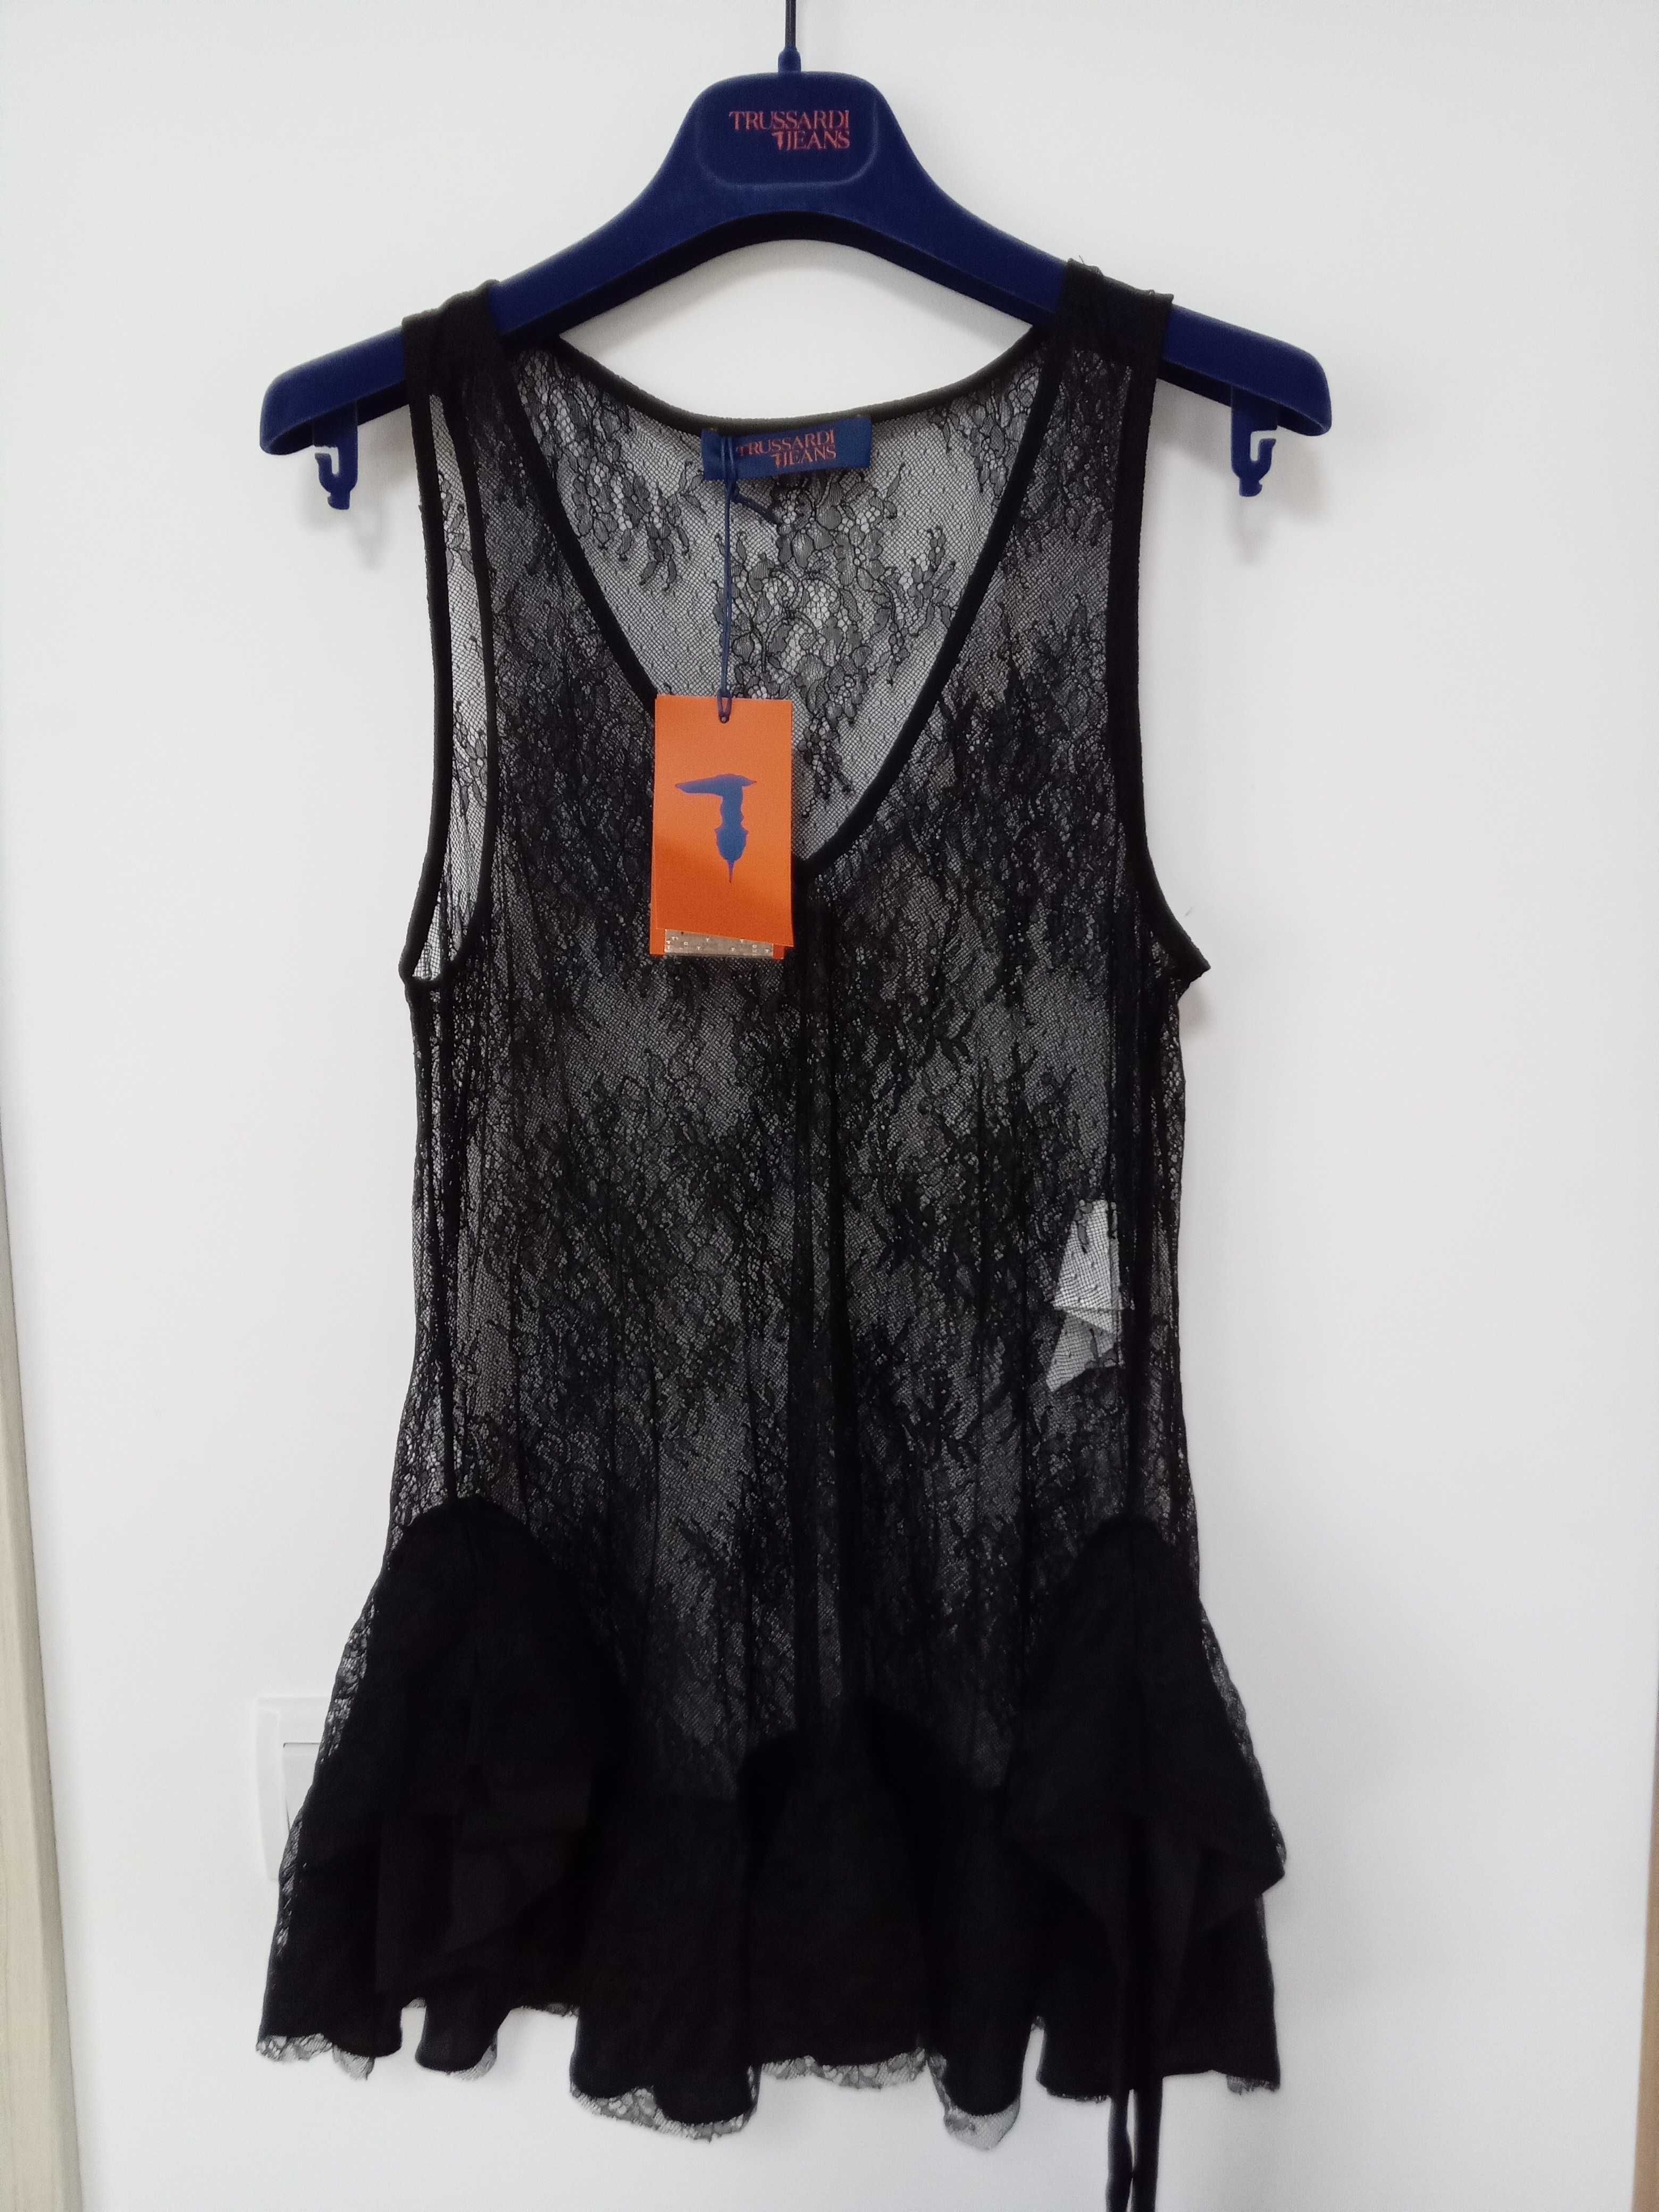 Дамска дантелена блуза ТРУСАРДИ,черна,размер Л,М, 40